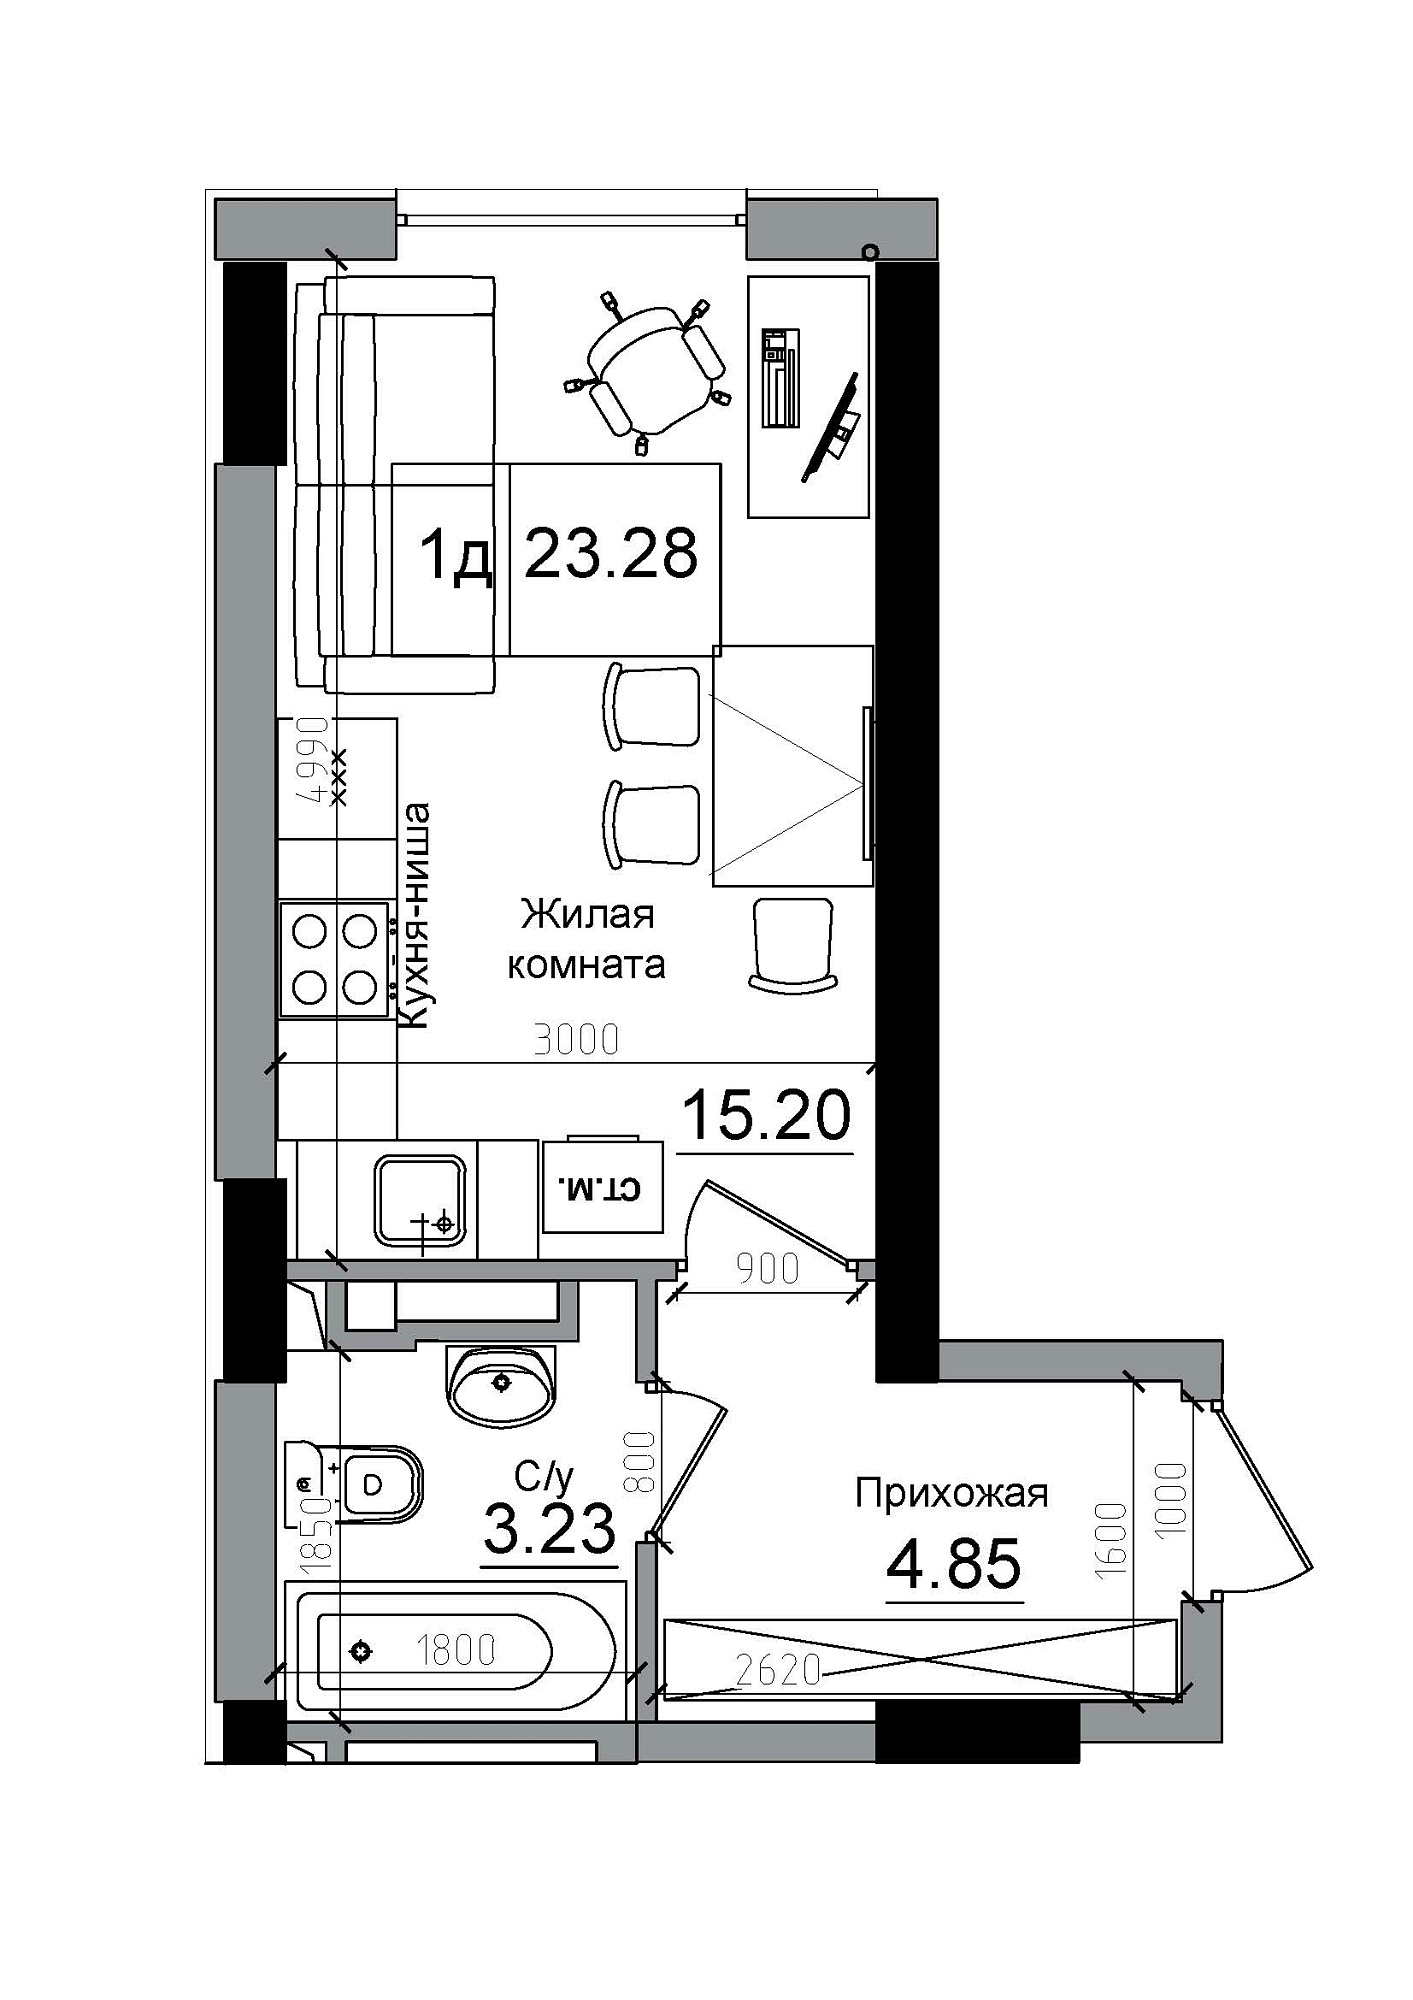 Планування Smart-квартира площею 23.28м2, AB-12-01/00005.